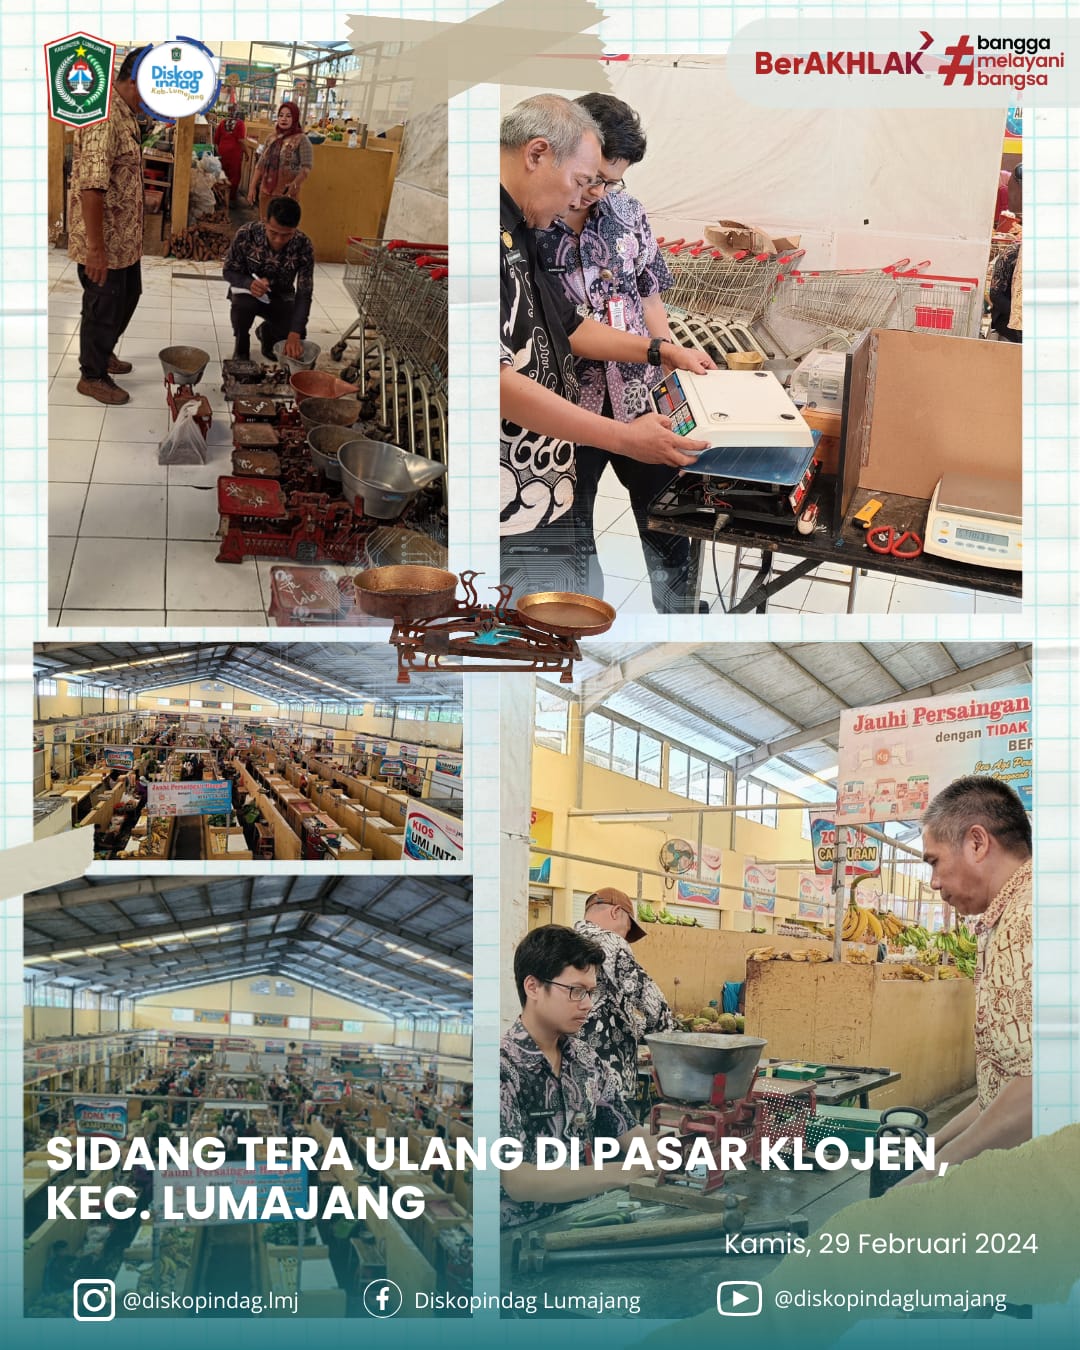 Sidang Tera, Tera Ulang dan Pengawasan Kemetrologian di Pasar Klojen Kec. Lumajang